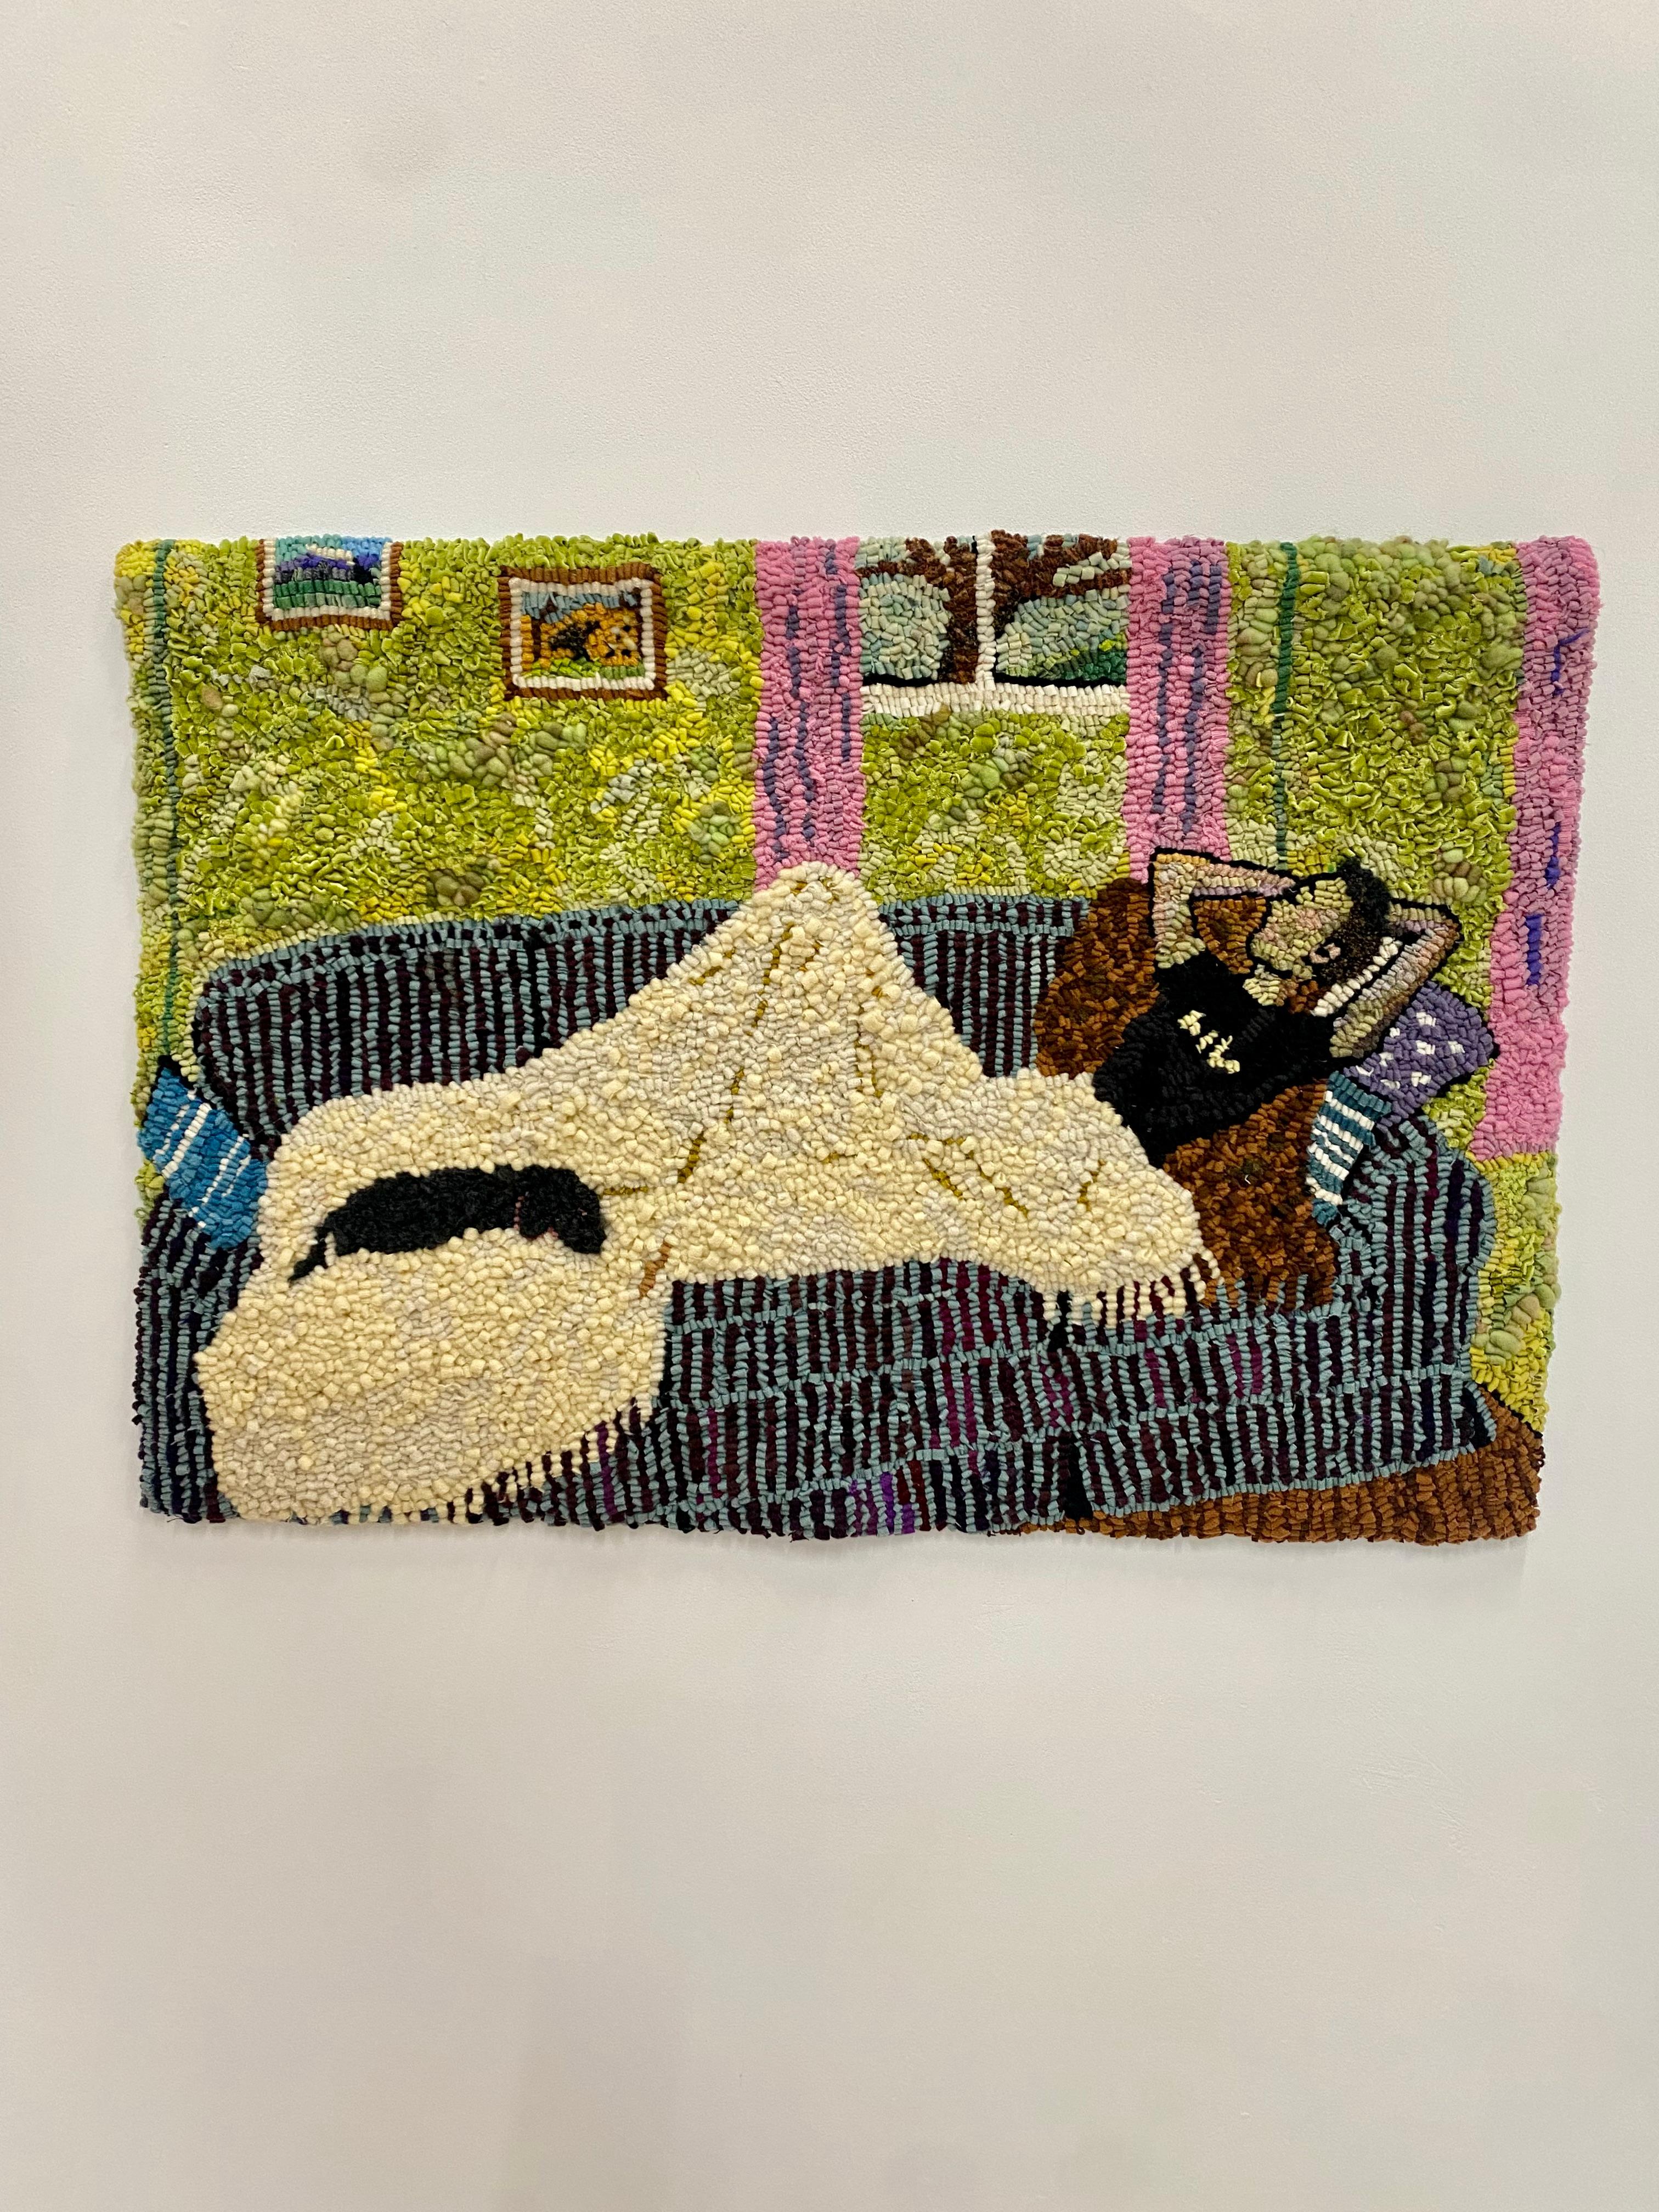 Nap-Serie Zwei, Inneneinrichtung, Figur auf blauer Kommode, schwarzer Hund, grünes Zimmer – Painting von Mary Tooley Parker